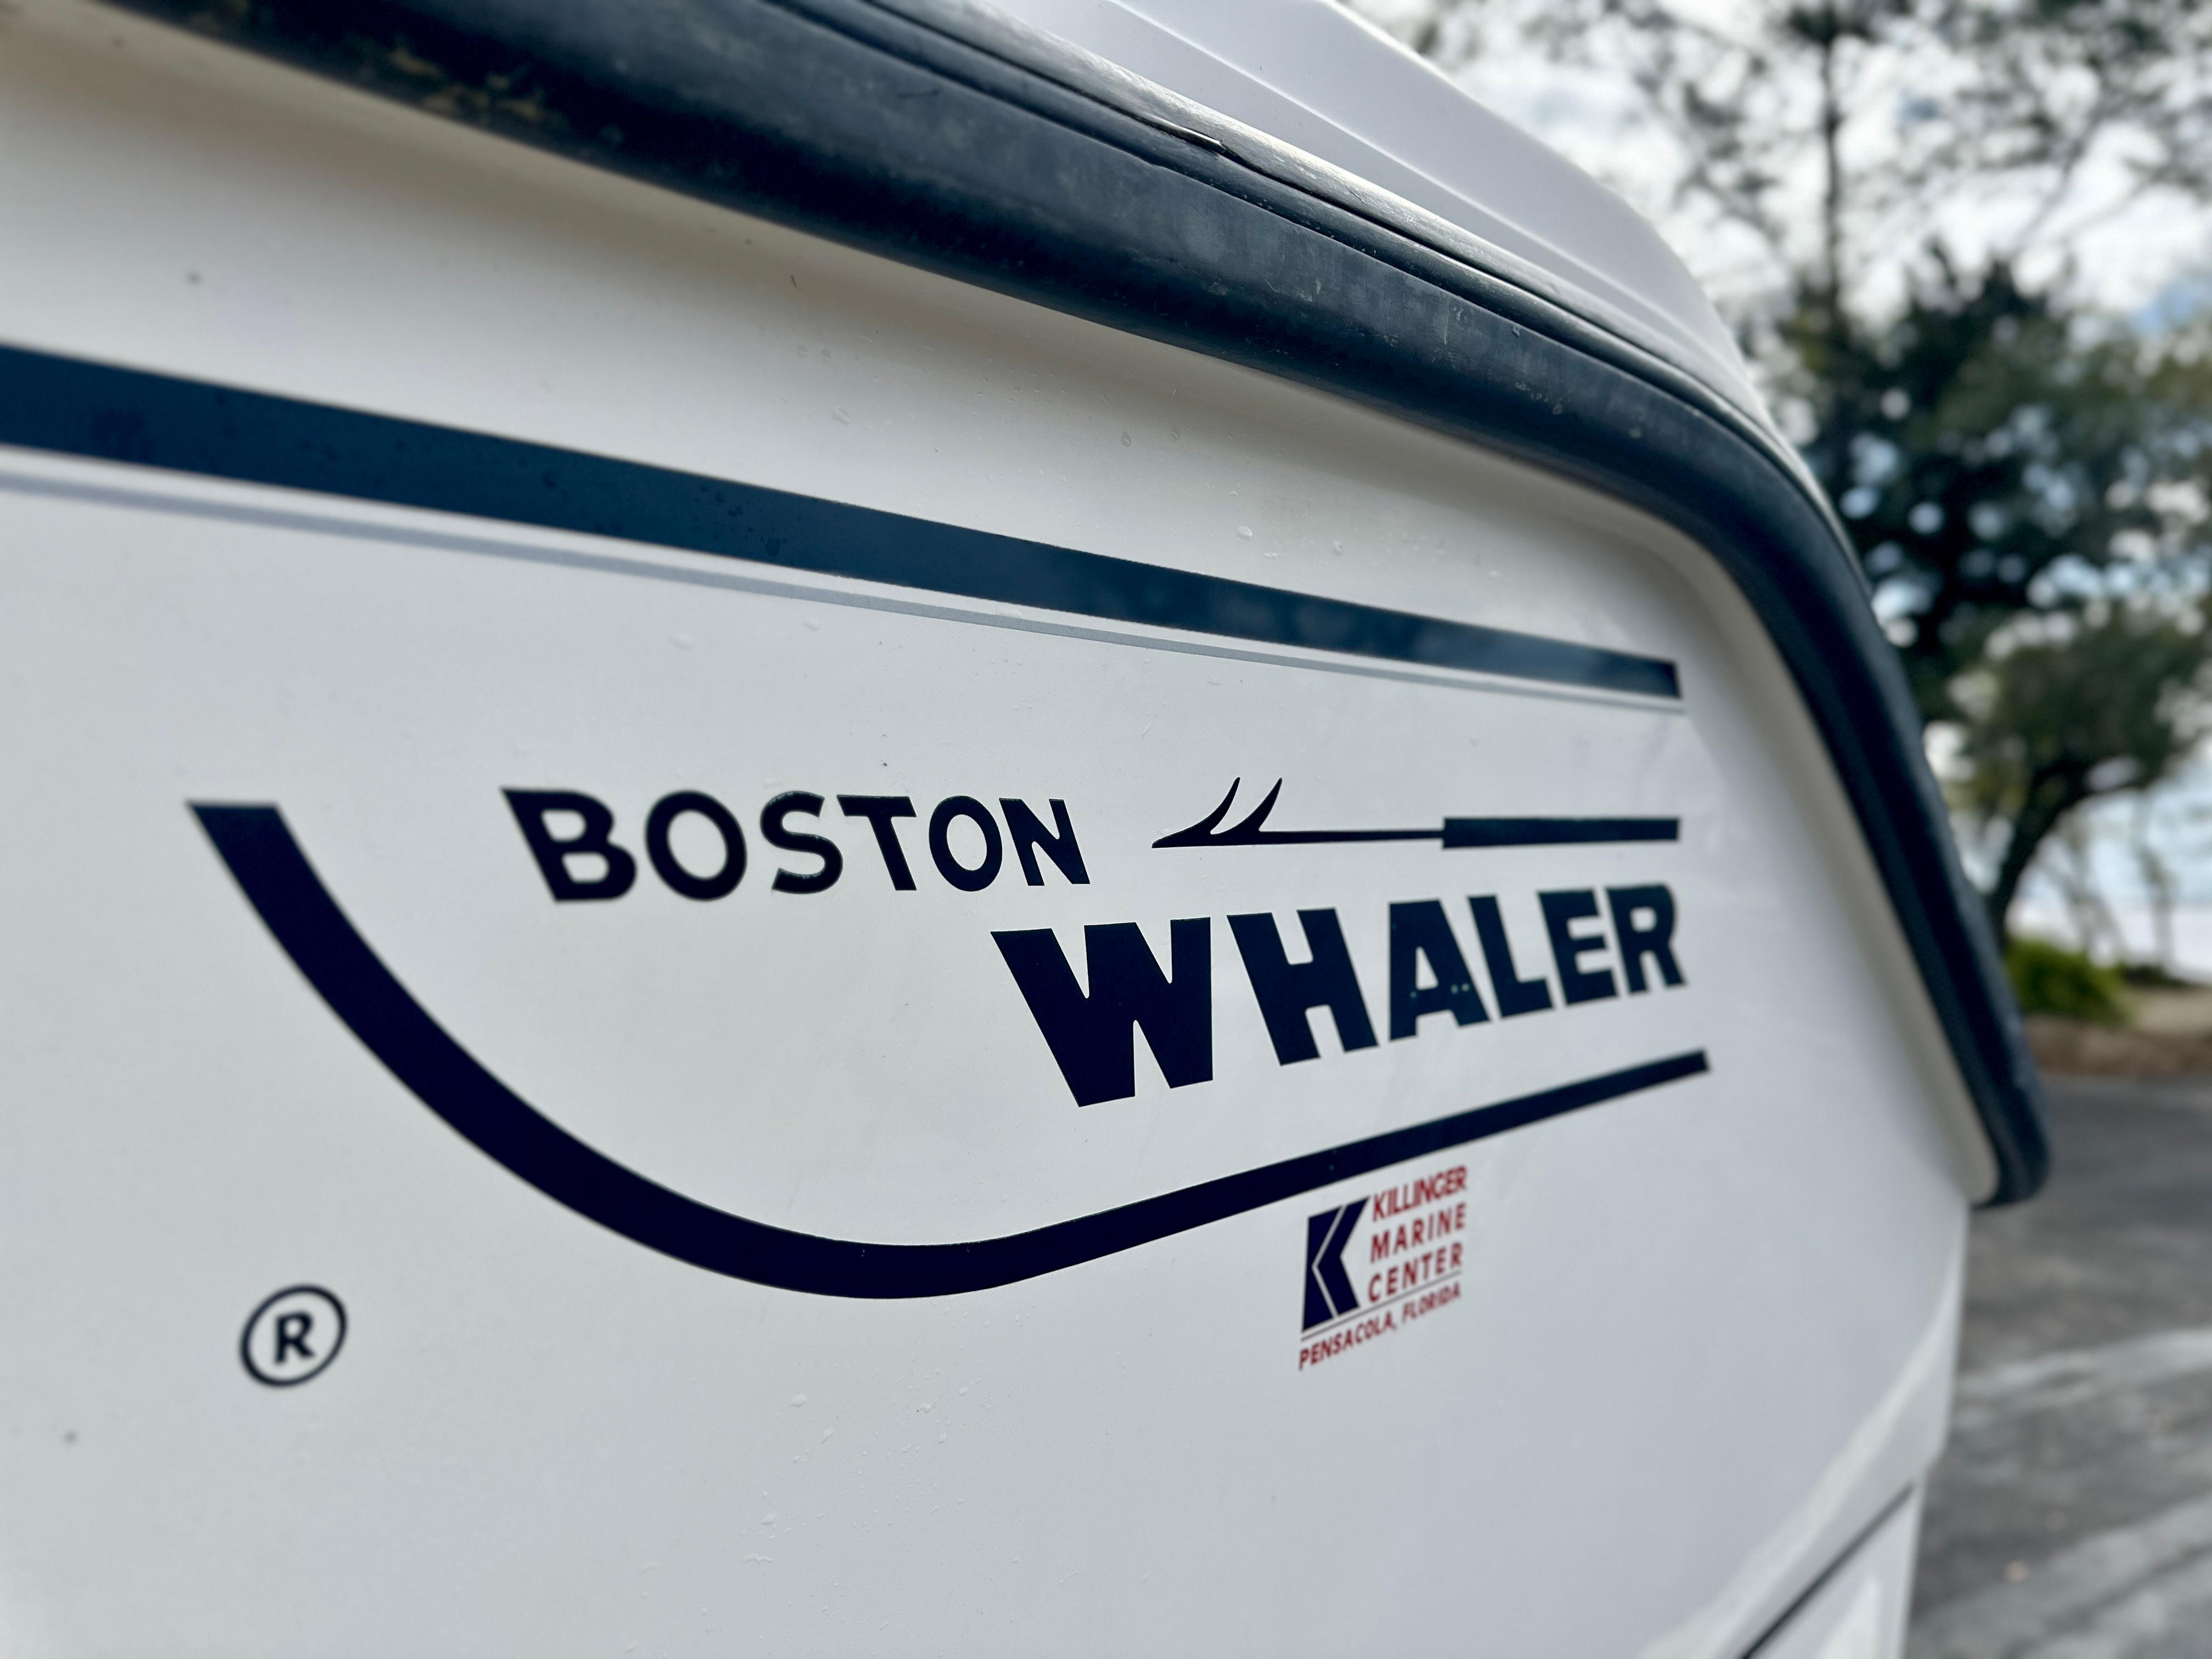 2000 Boston Whaler 26 Outrage